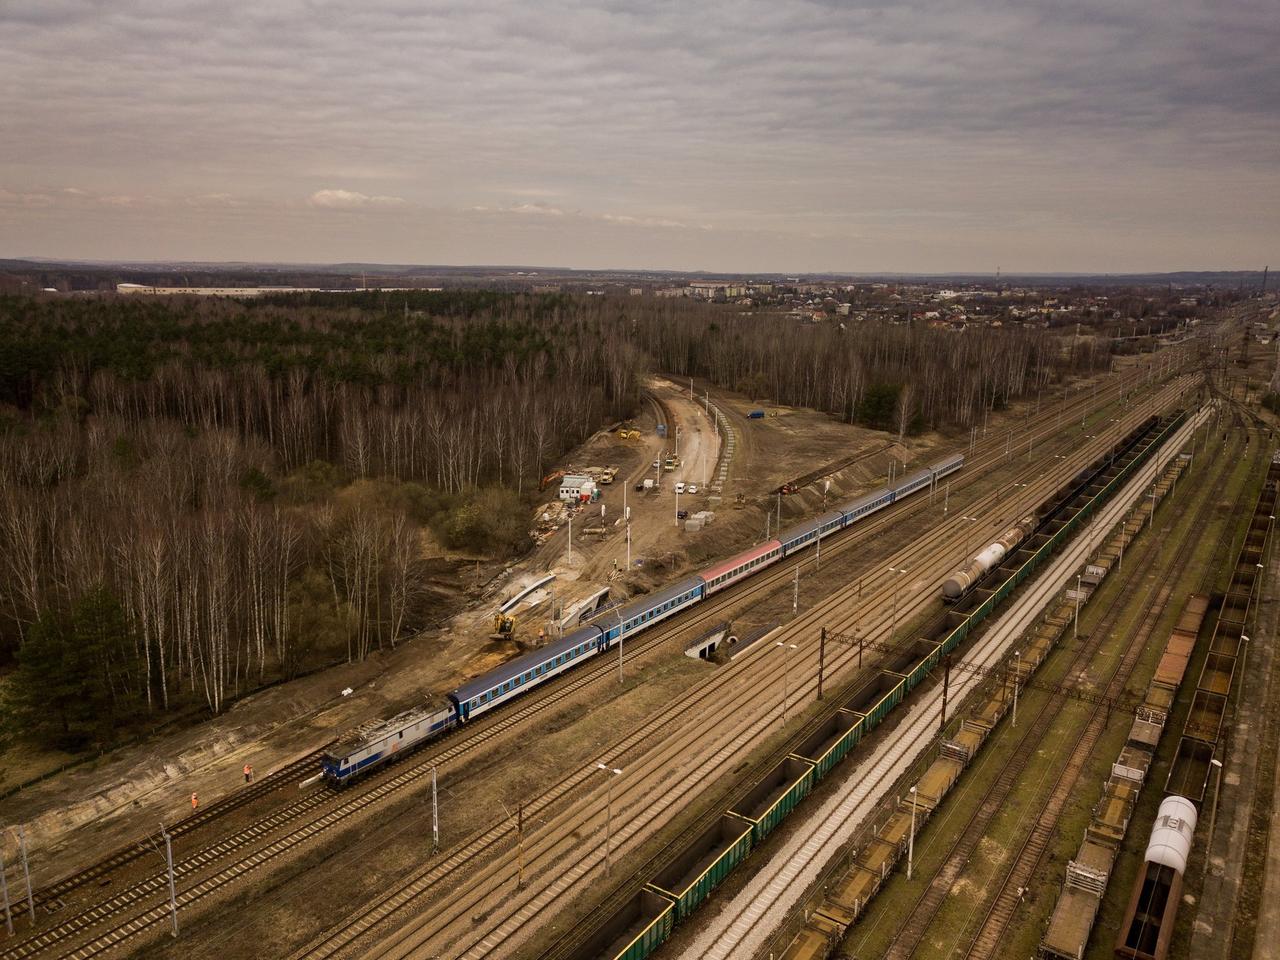 Coraz bliżej połączenia kolejowego z lotniskiem w Pyrzowicach. Trwają prace na odcinku między Siewierzem, a terenem przyszłej stacji Pyrzowice-Lotnisko